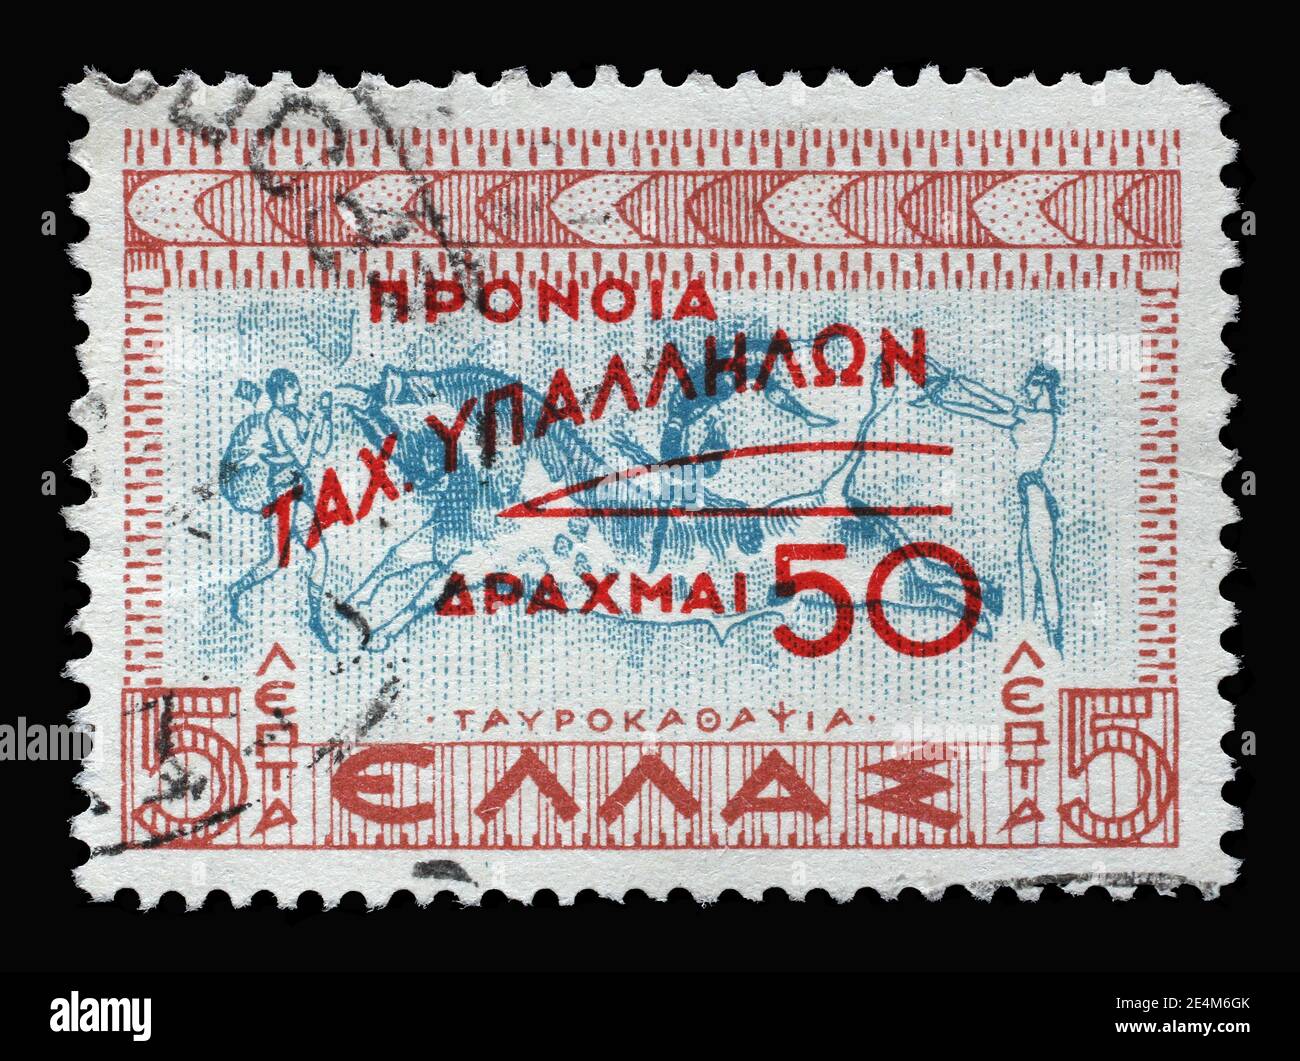 Timbre imprimé en Grèce montre Tavrokathapsia, course de taureaux, Minoan Crète, Fonds de bien-être du personnel postal, vers 1951 Banque D'Images